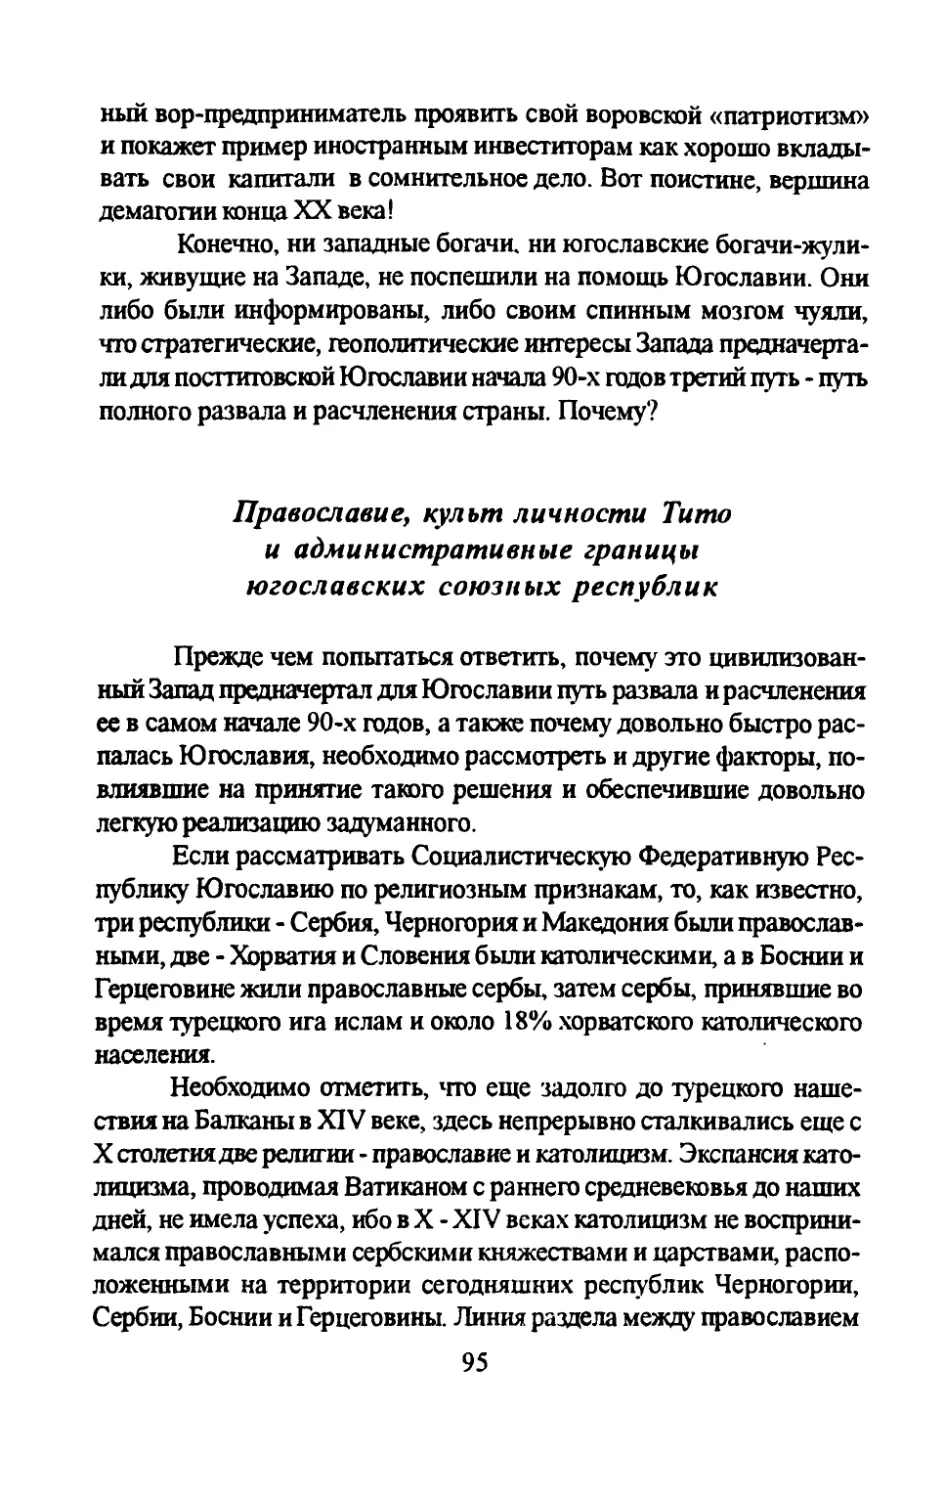 Православие, культ личности Тито и административные границы югославских союзных республик